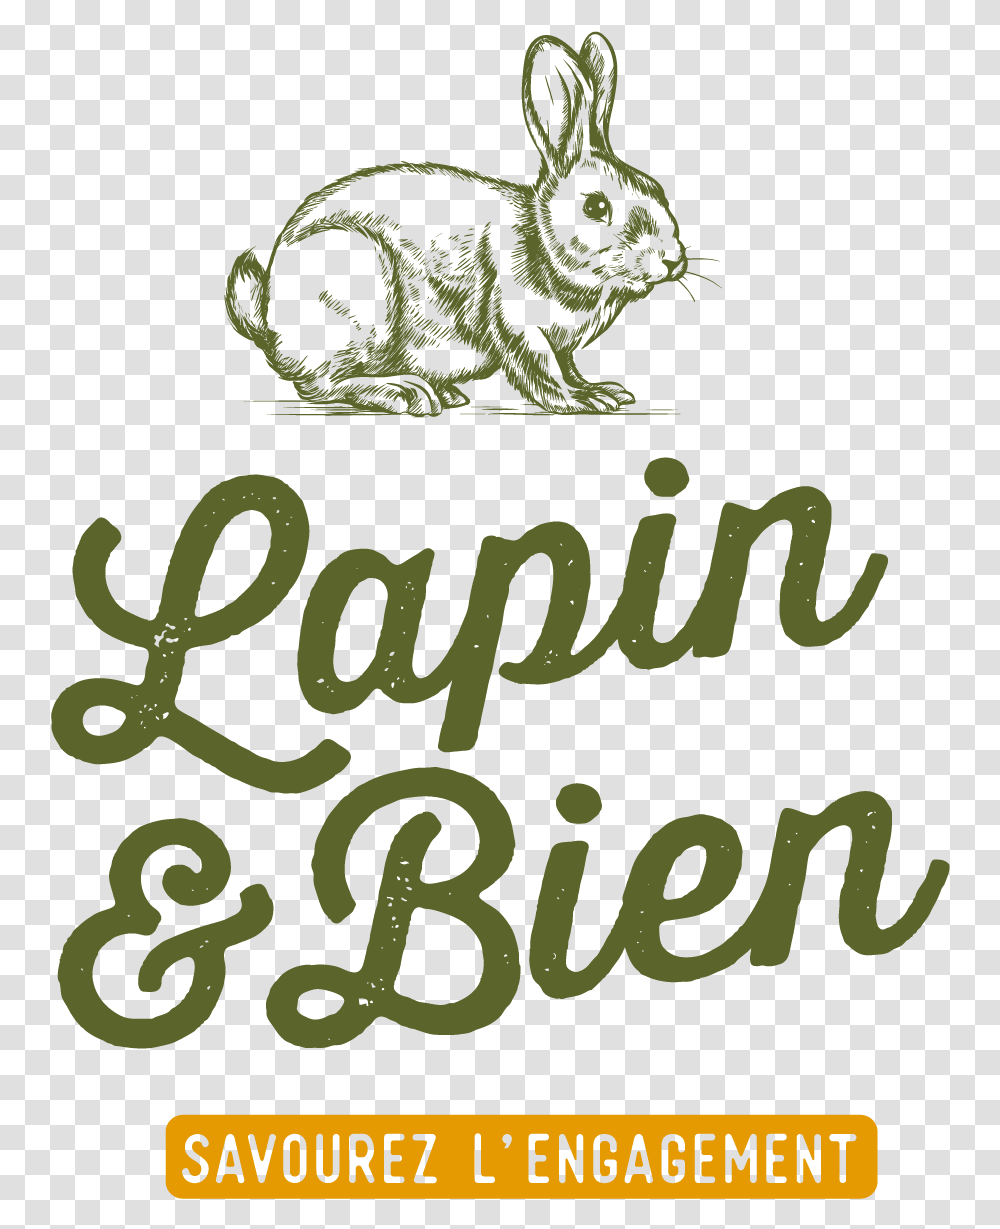 Logo Lapinetbien Def Plan De Travail 1 Domestic Rabbit, Alphabet, Poster, Label Transparent Png